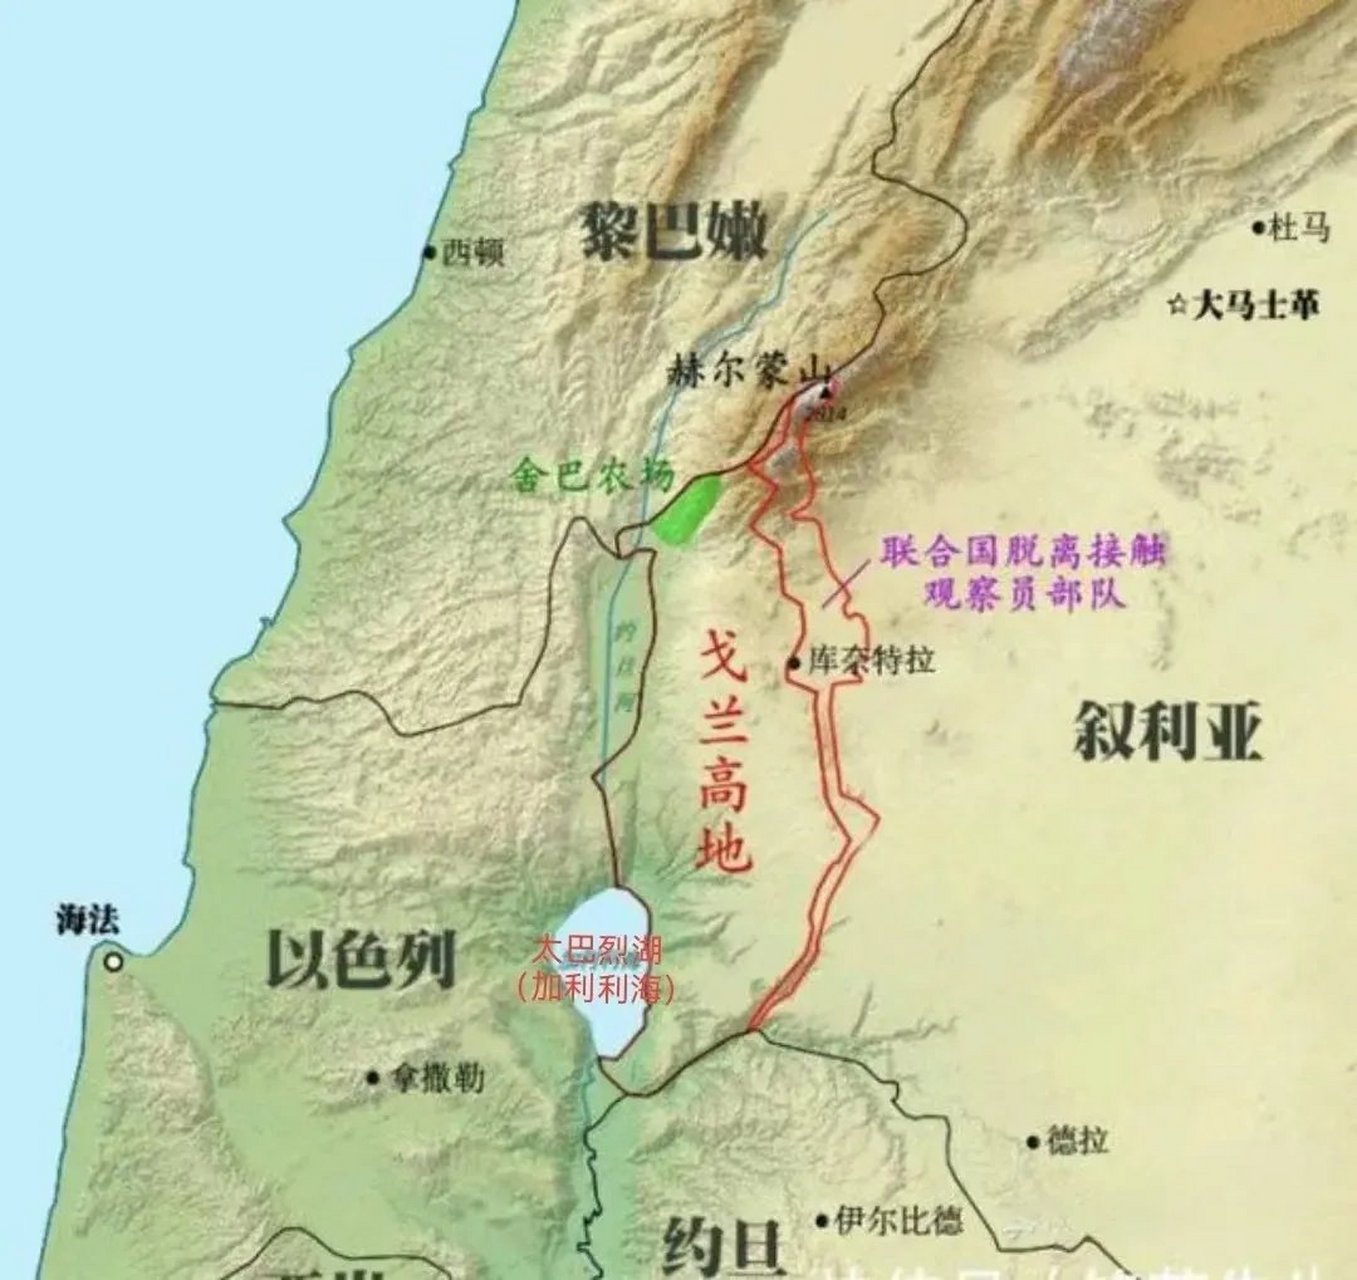 戈兰高地西与以色列接壤,是叙利亚西南边陲的战略要地,从戈兰高地可以